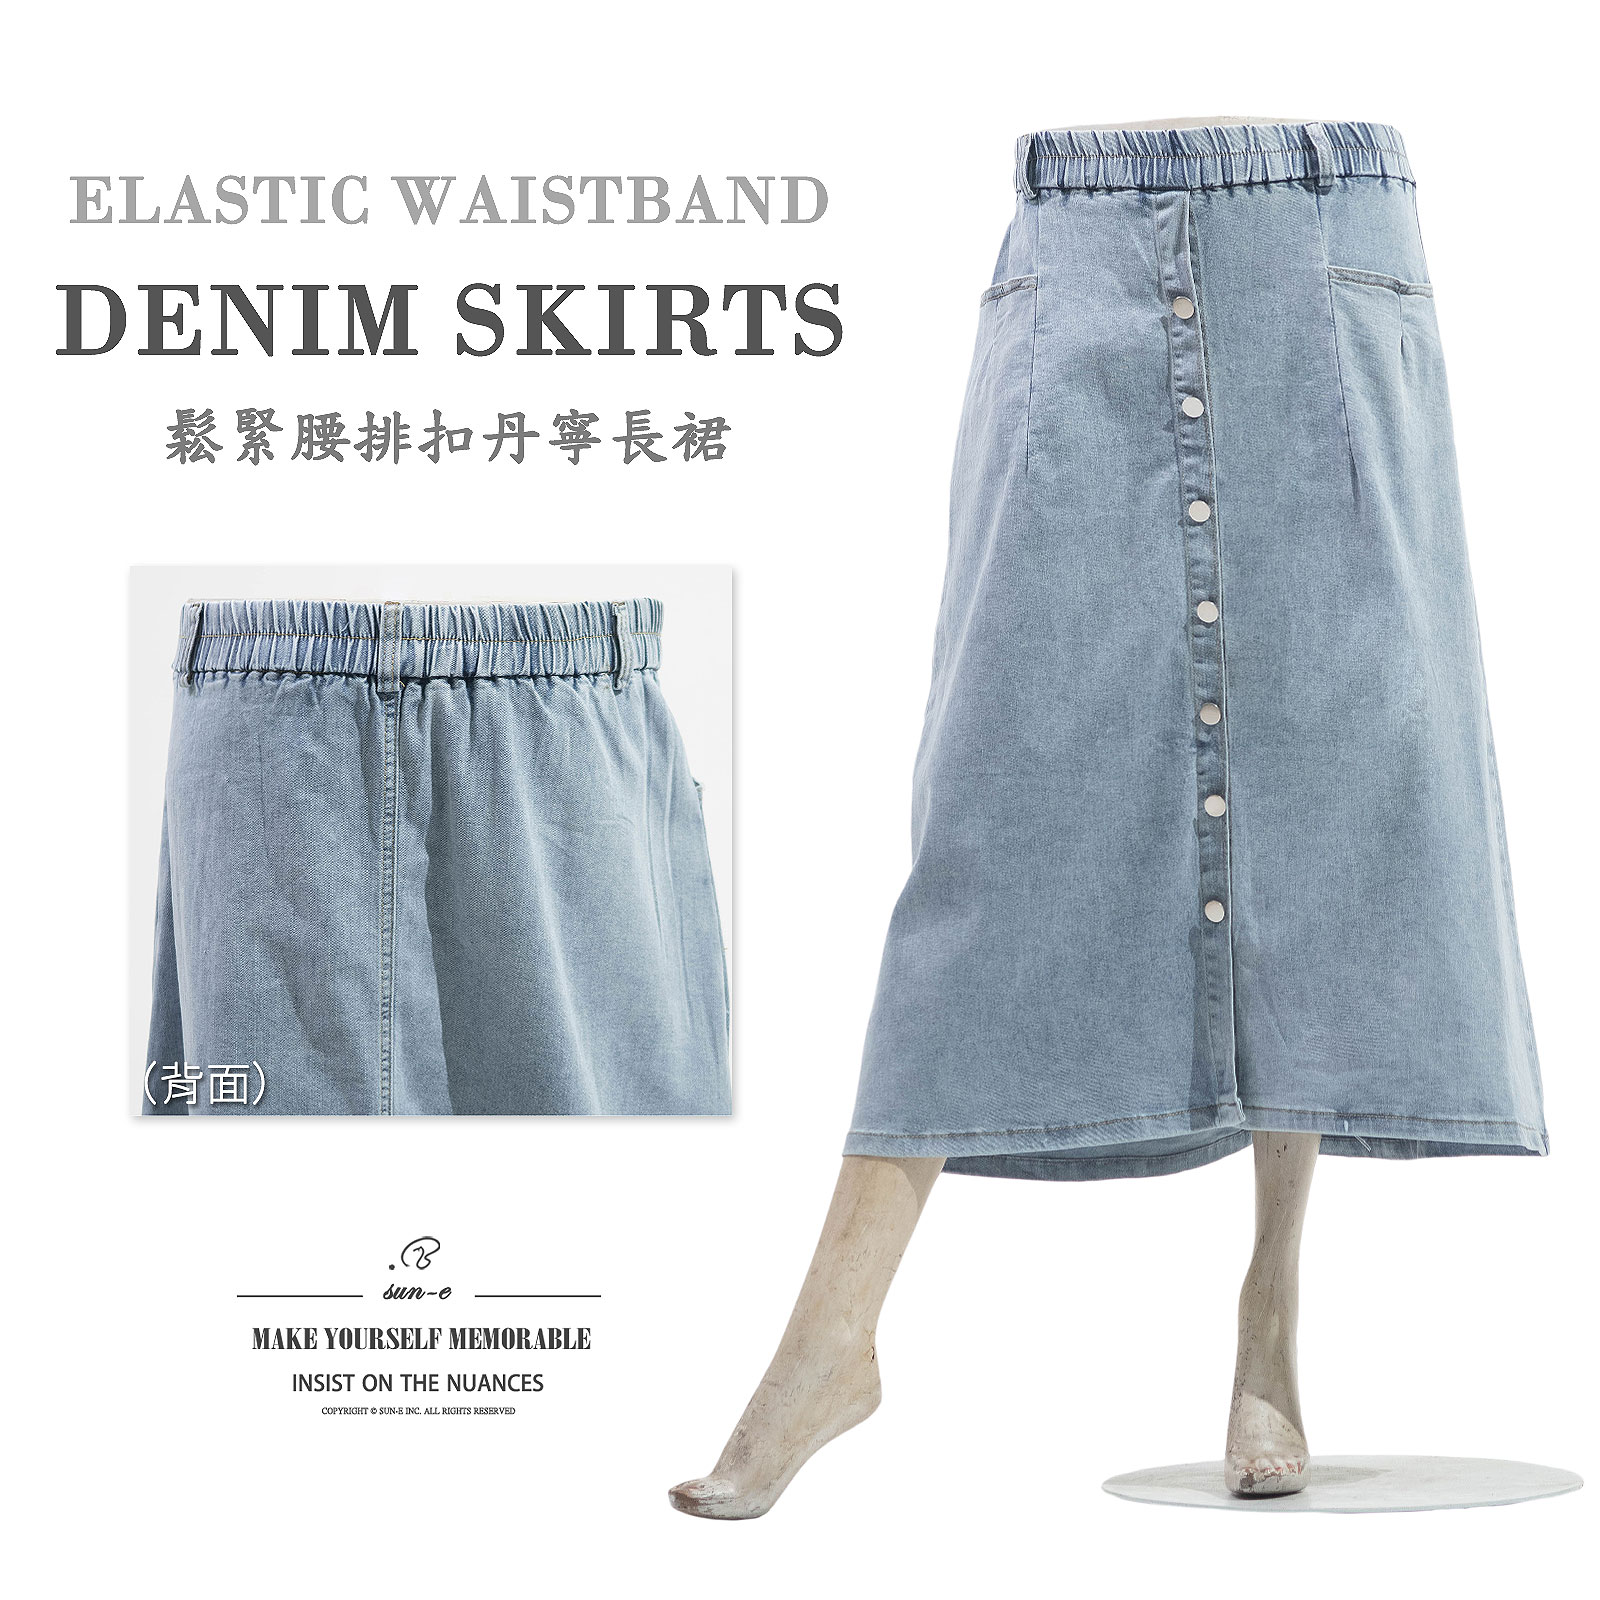 排扣牛仔長裙 全腰圍鬆緊帶牛仔裙 彈性丹寧裙子 Denim Skirts Jean Skirts Stretch Skirts (050-5844-32)淺牛仔 S M L XL (腰圍:24~35英吋 / 61~89公分) 女 [實體店面保障] sun-e